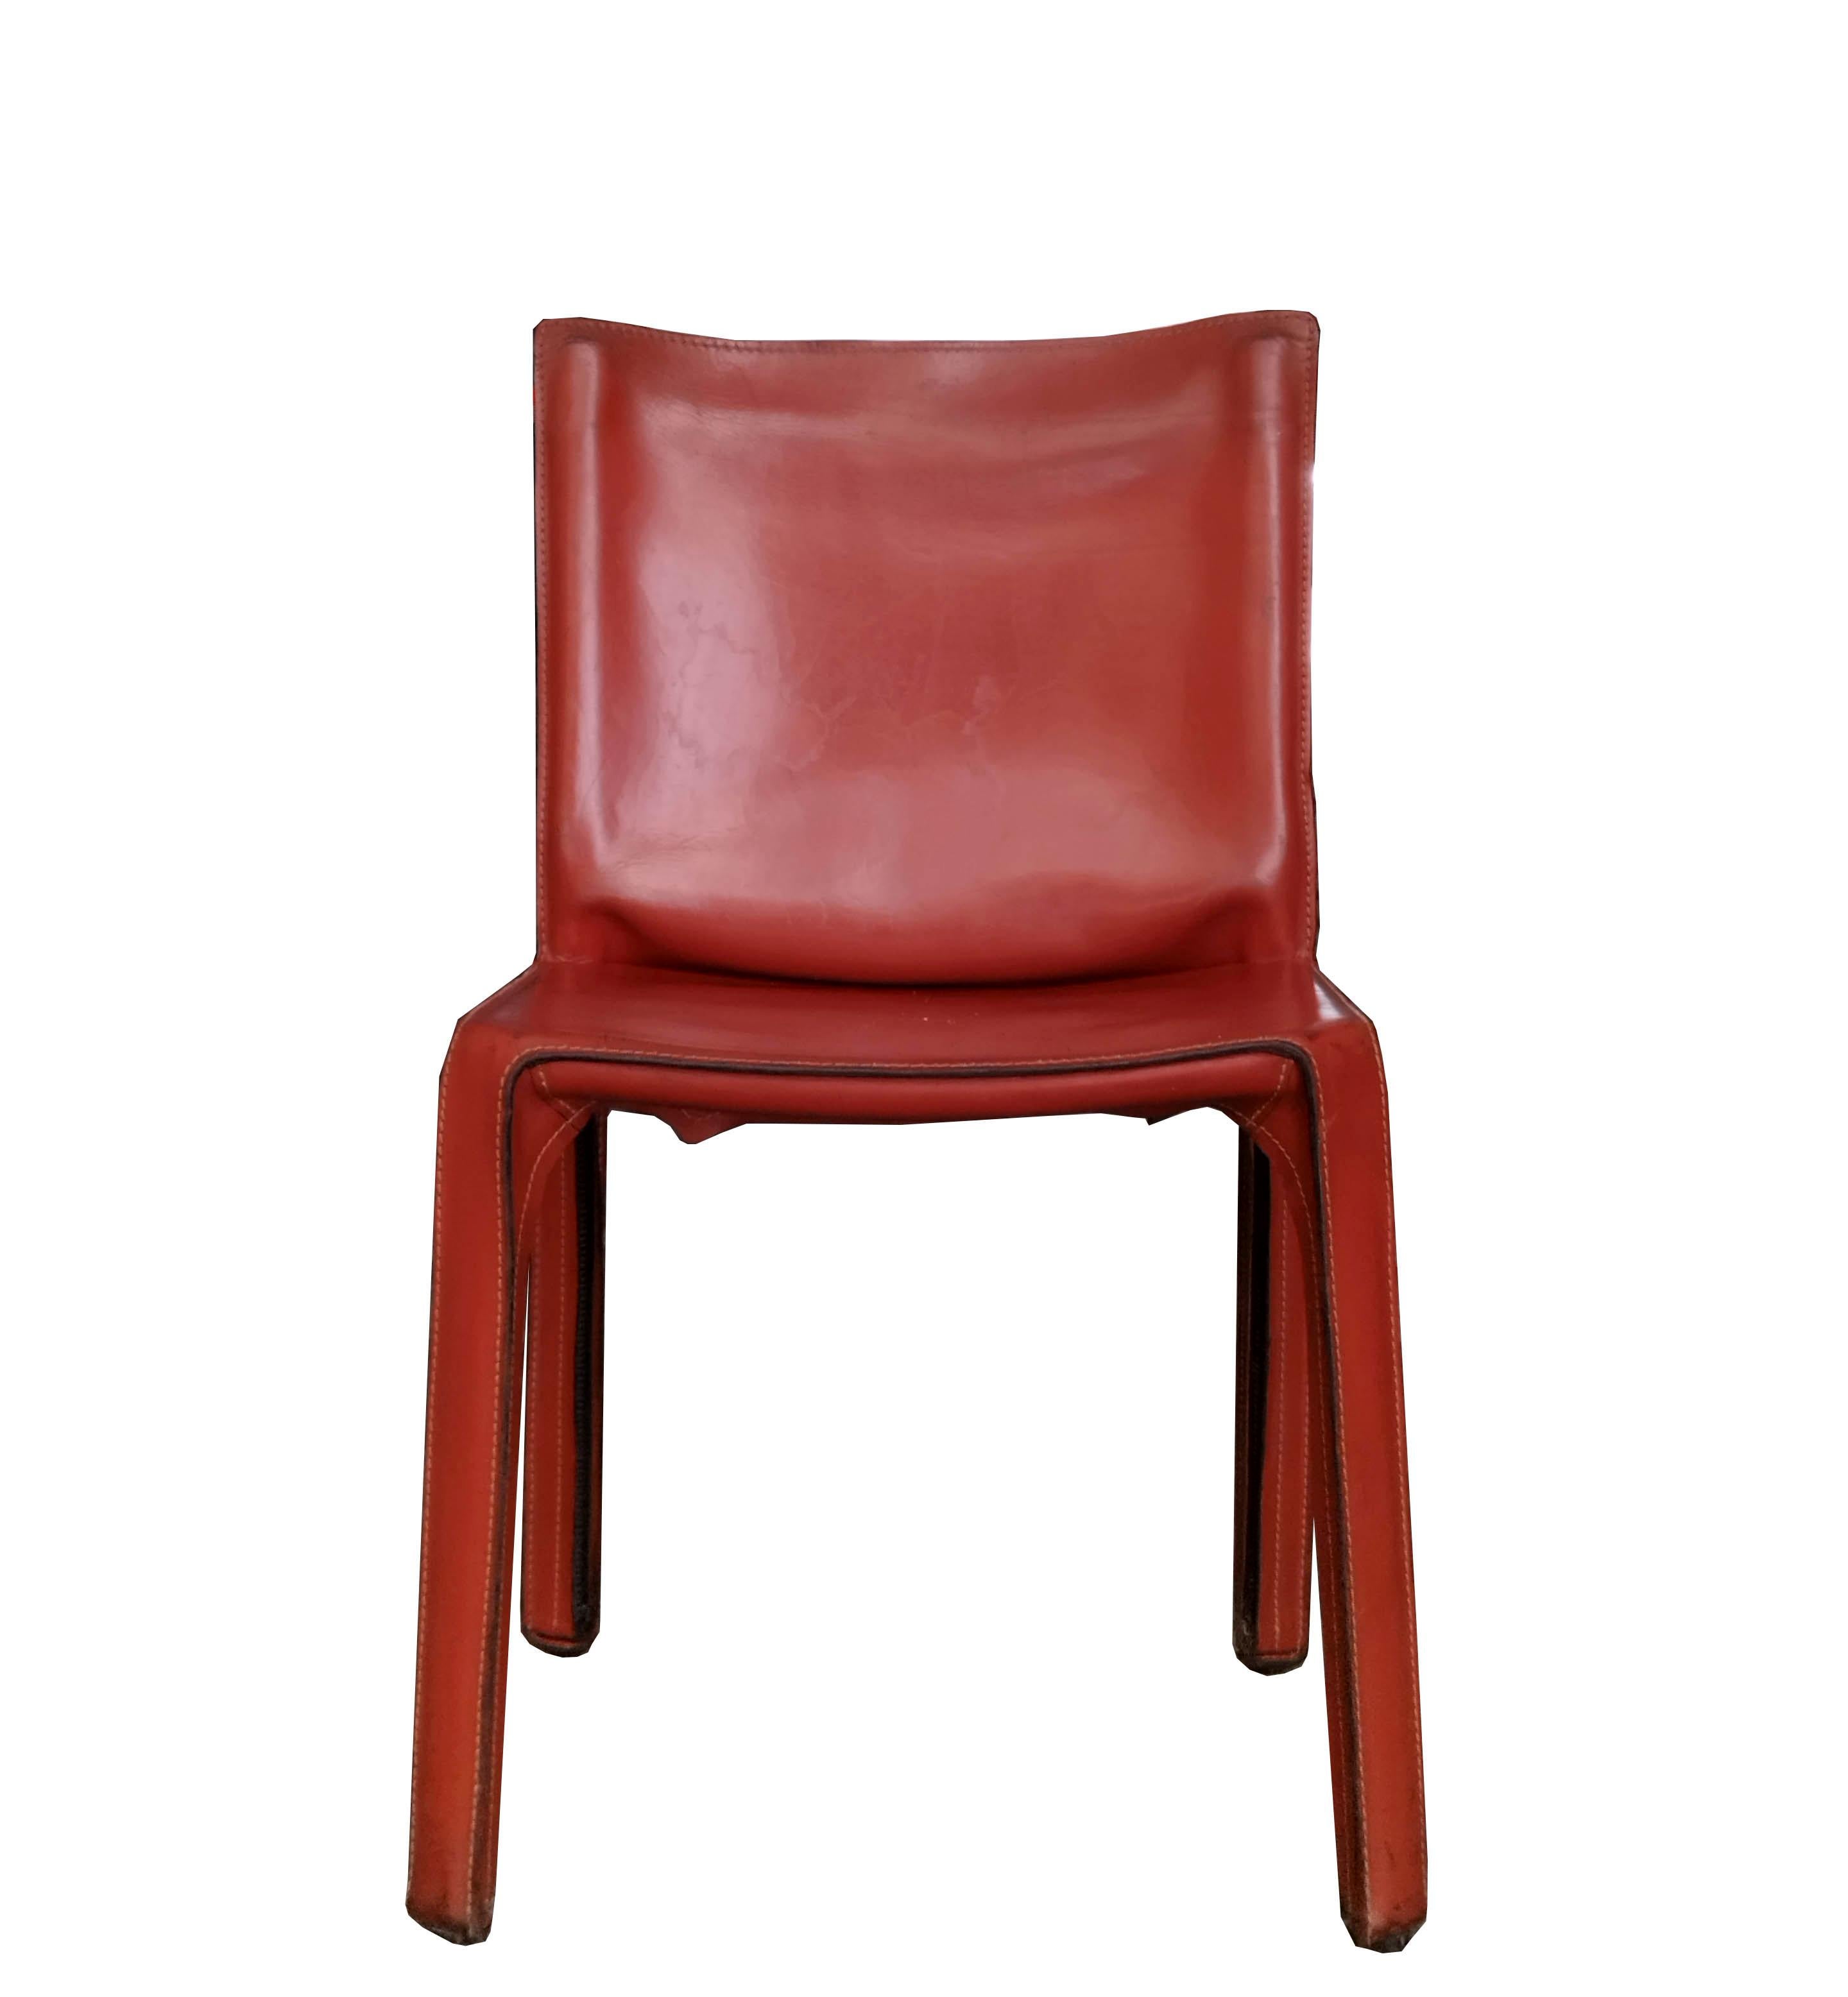 Ce design iconique de Mario Bellini pour Cassina, datant des années 1970, présente le cuir original de couleur caramel. Le bas des chaises porte l'inscription - Cassina.